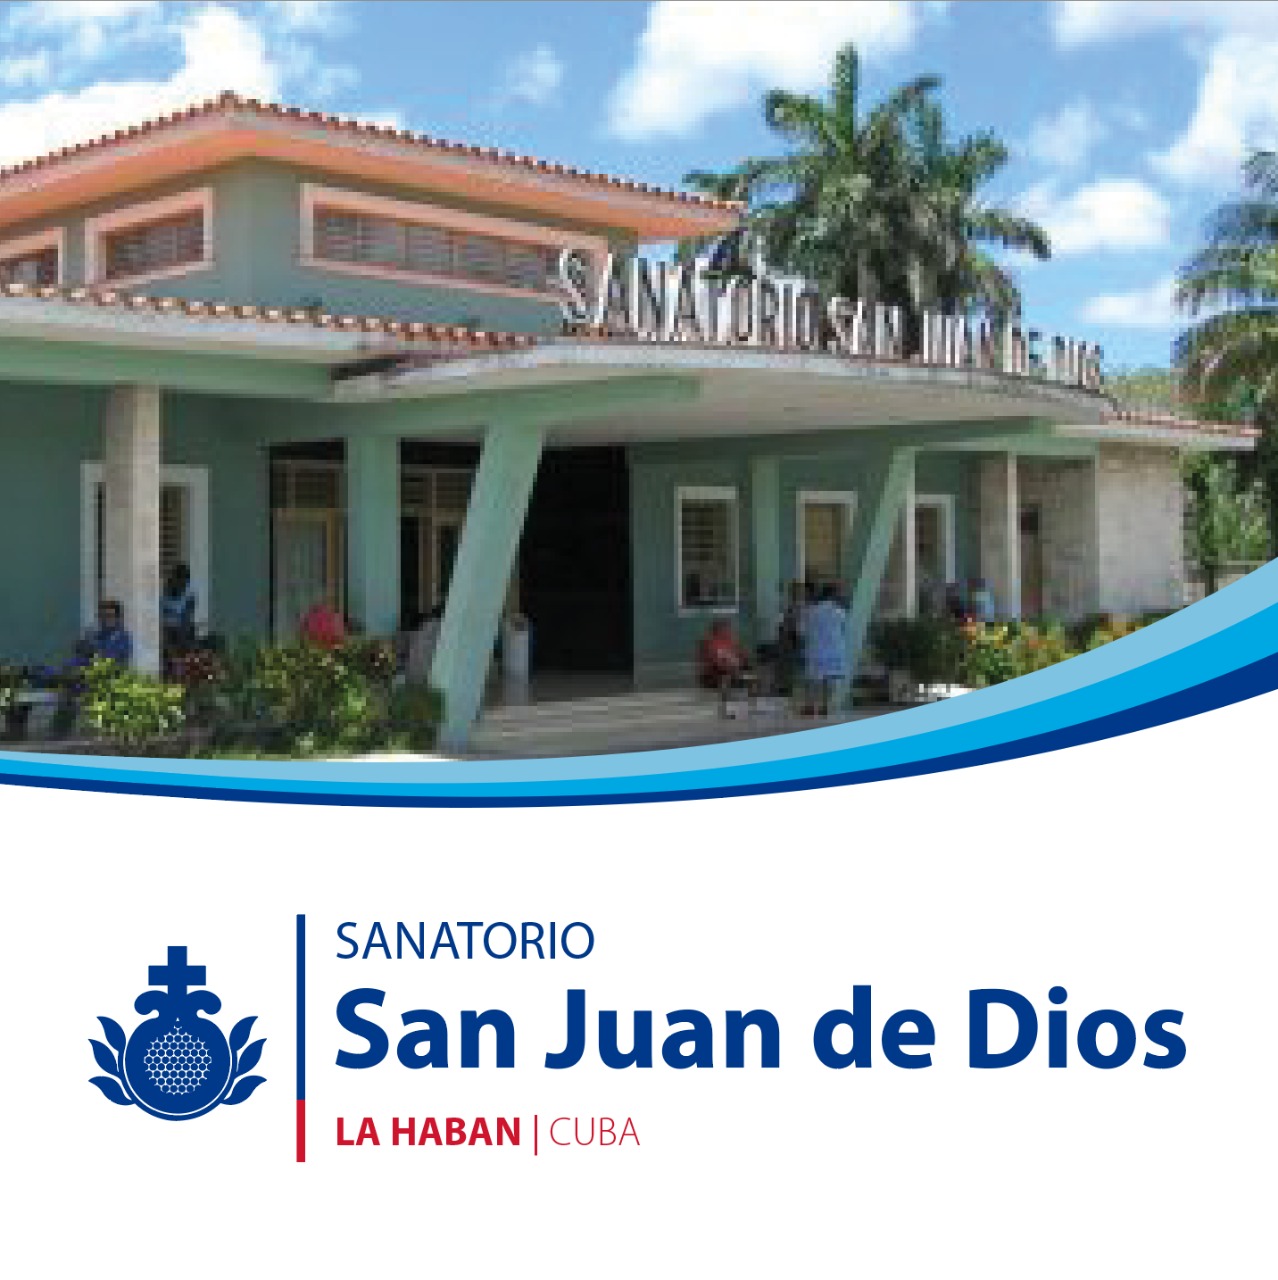 Centro Cuba Sanatorio San Juan de Dios | Orden Hospitalaria San Juan de Dios